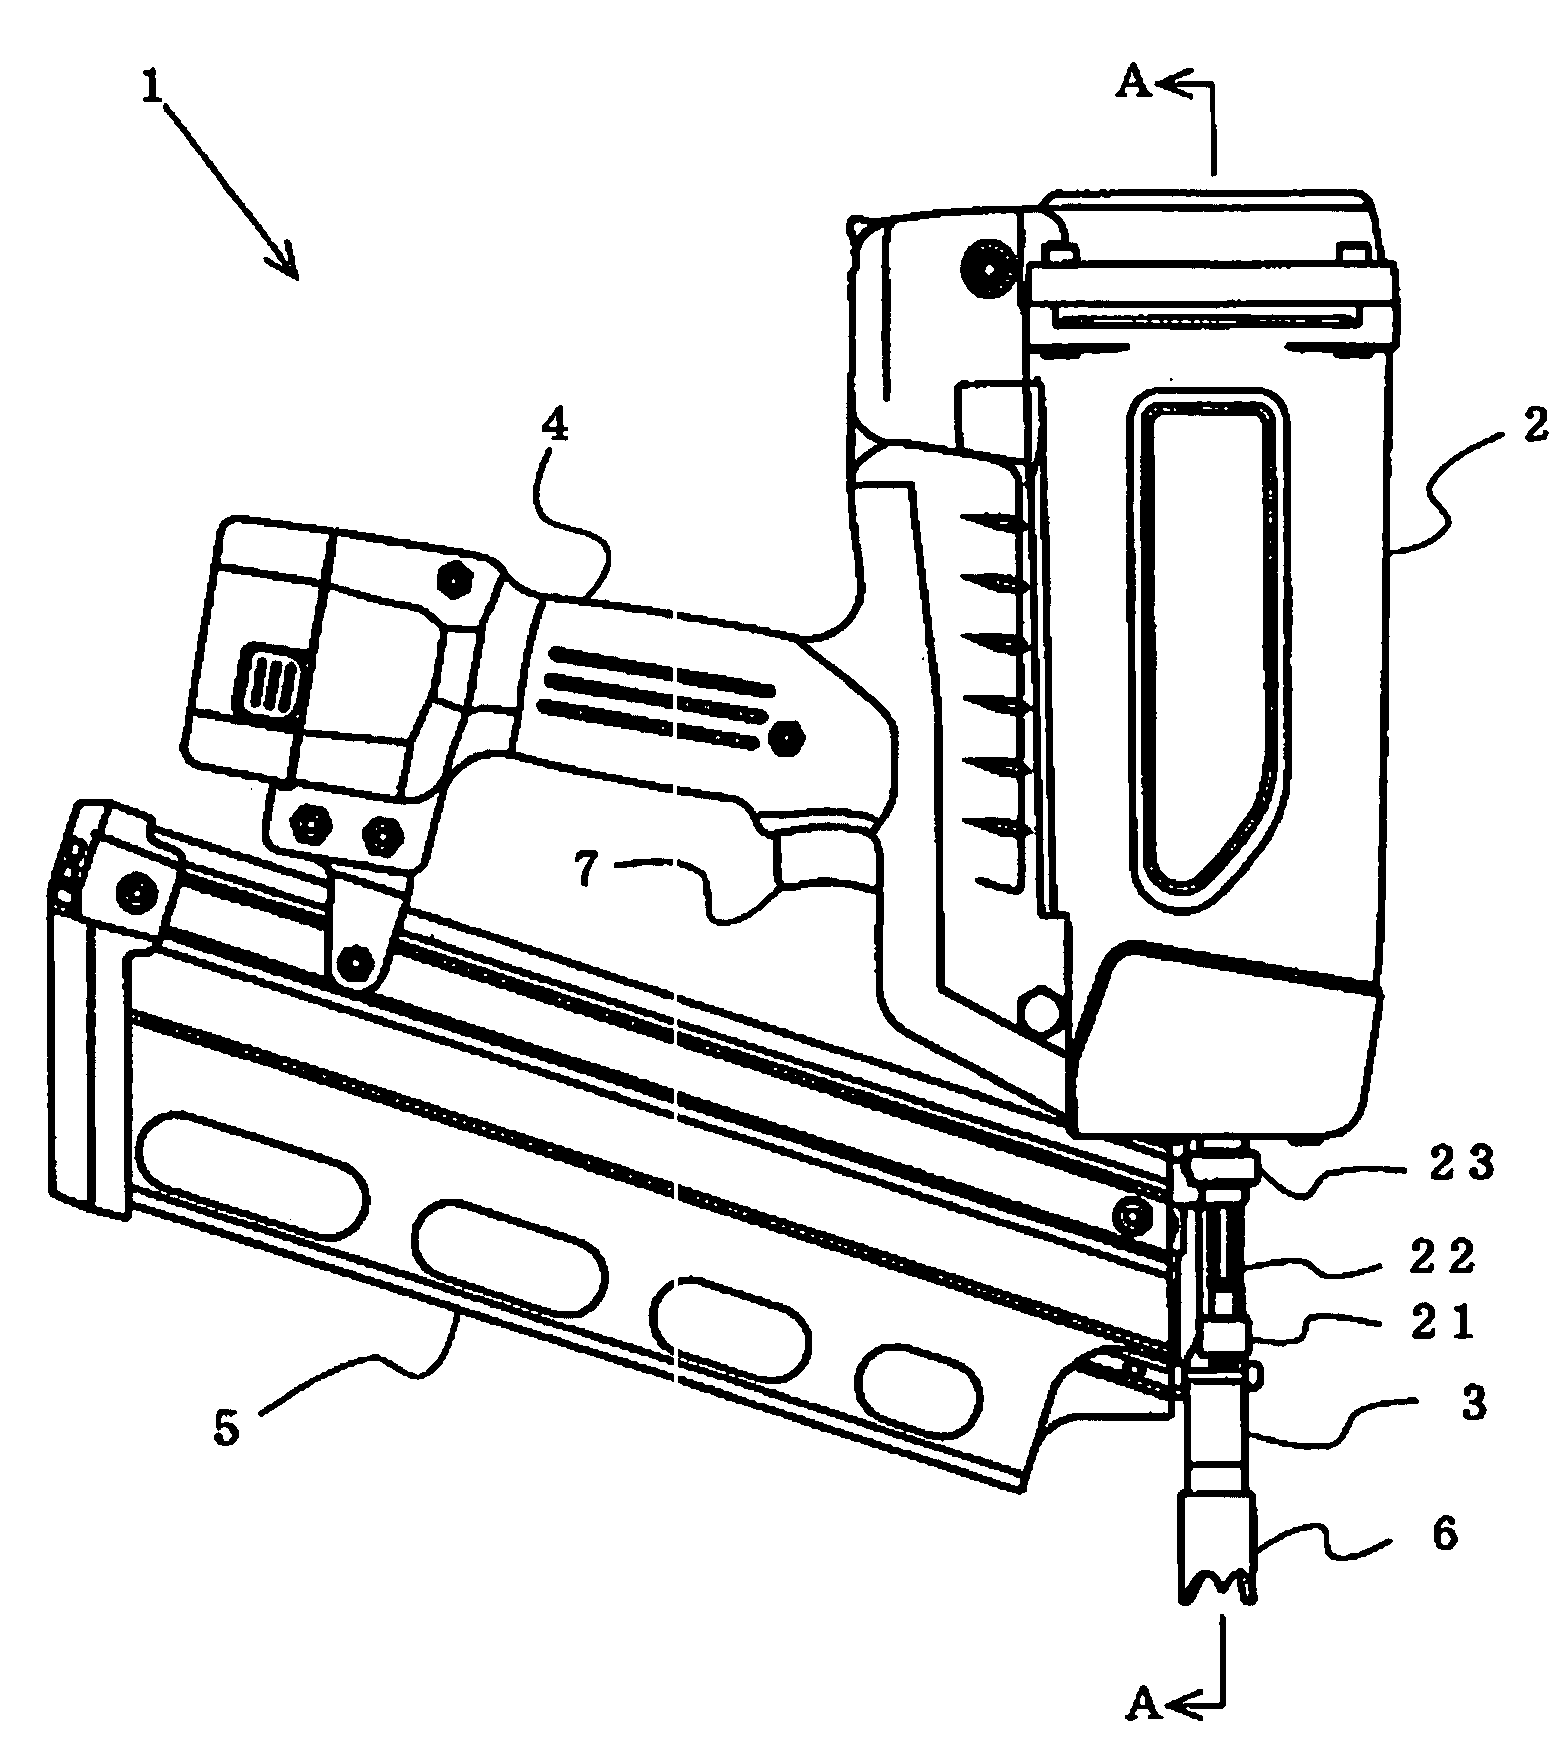 Power drive nailing machine